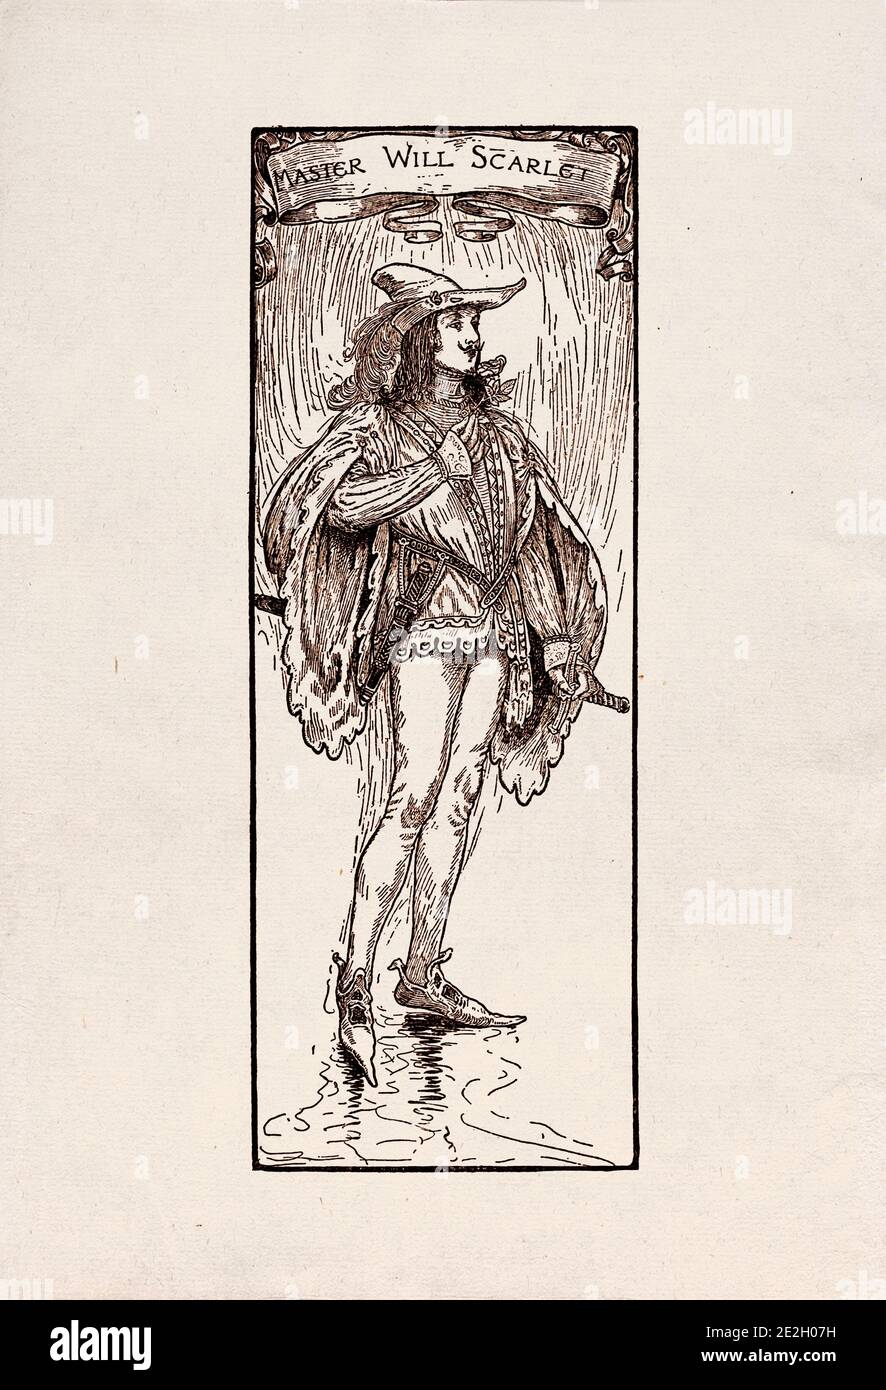 Gravure antique de personnages littéraires du folklore anglais des légendes Robin des Bois. Maître Scarlet. Par Louis Rhead. 1912 Banque D'Images